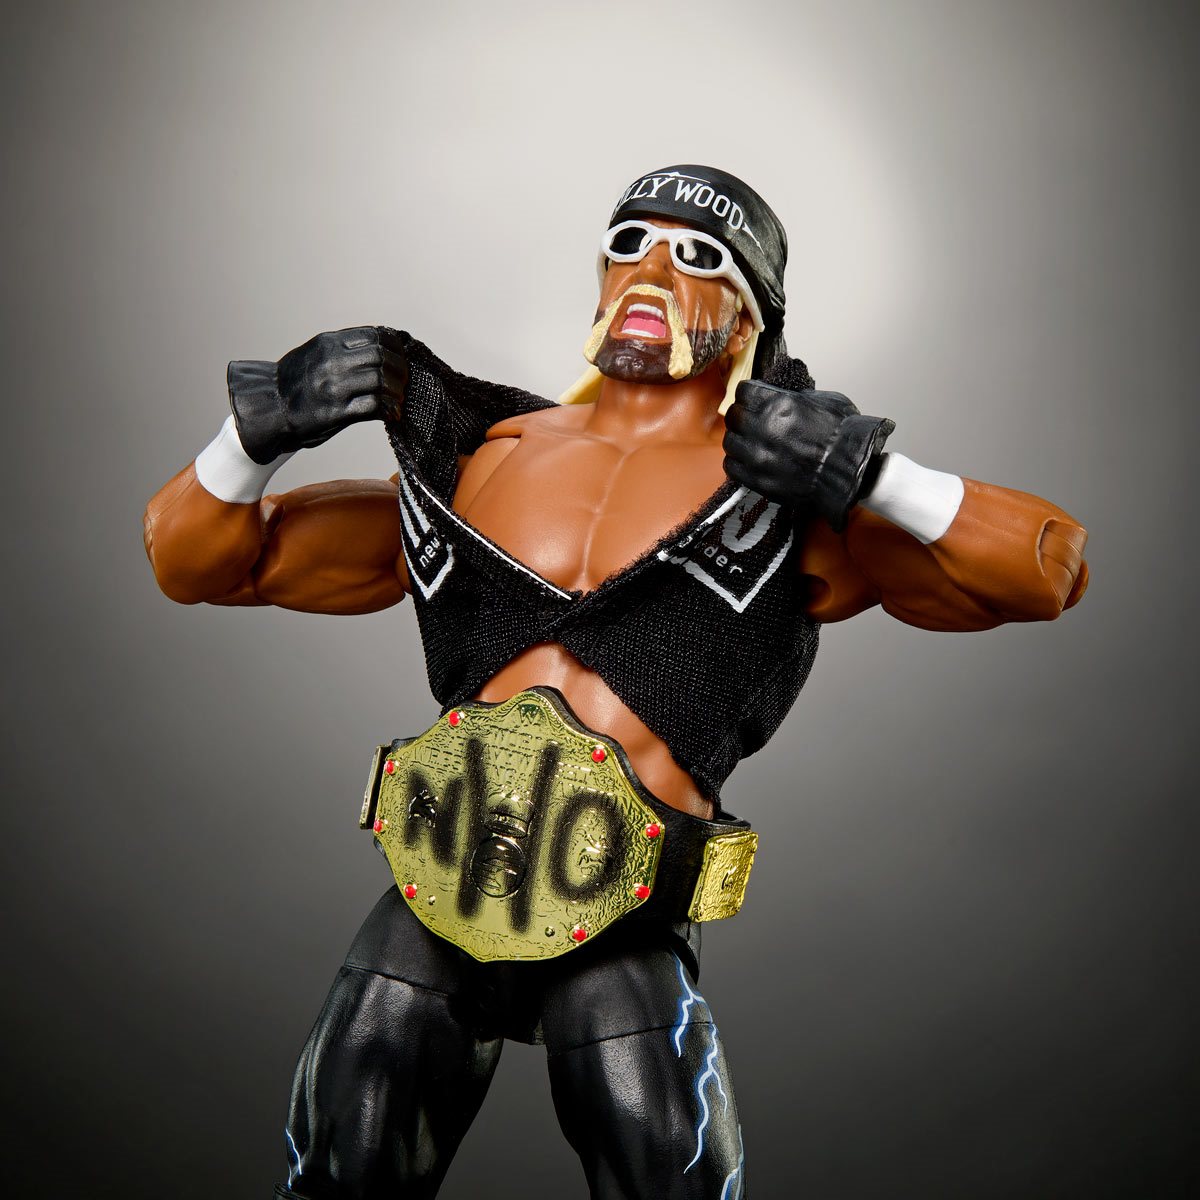 PREORDER Hulk Hogan - WWE Ultimate Edition Best Of Series 3